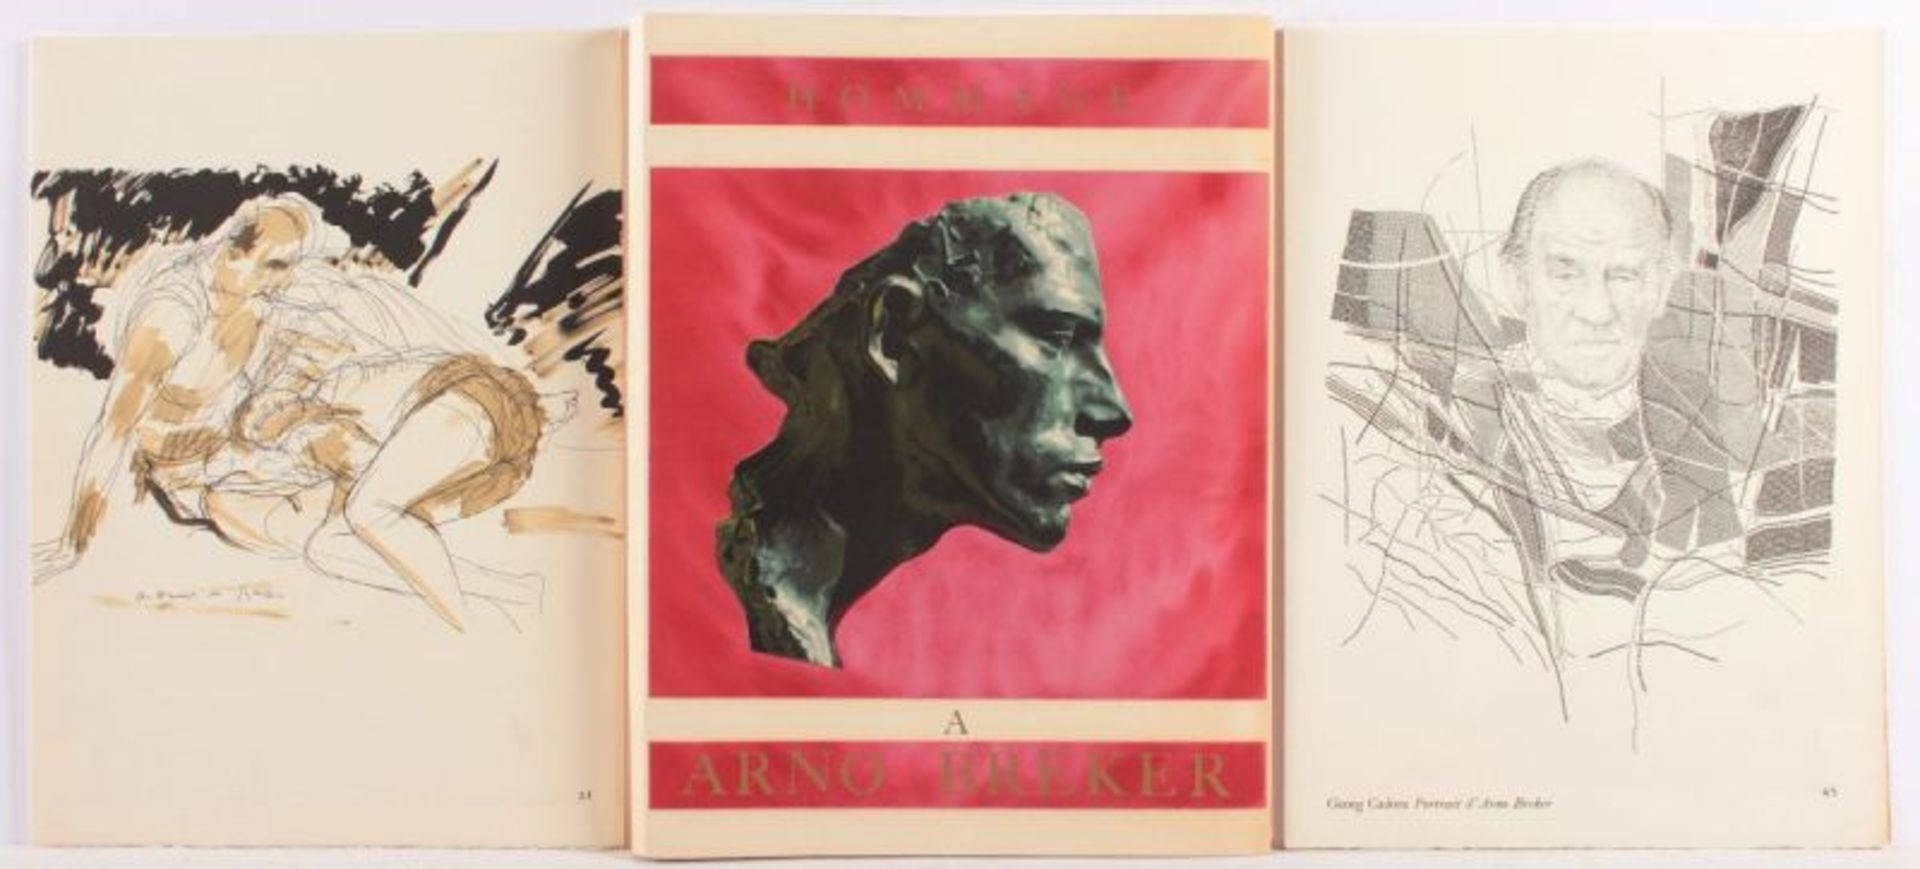 BREKER, Arno, mit Arbeiten von u.a. Jean Cocteau, Salvador Dali, "Hommage à Arno Breker", Mappe, - Image 2 of 2